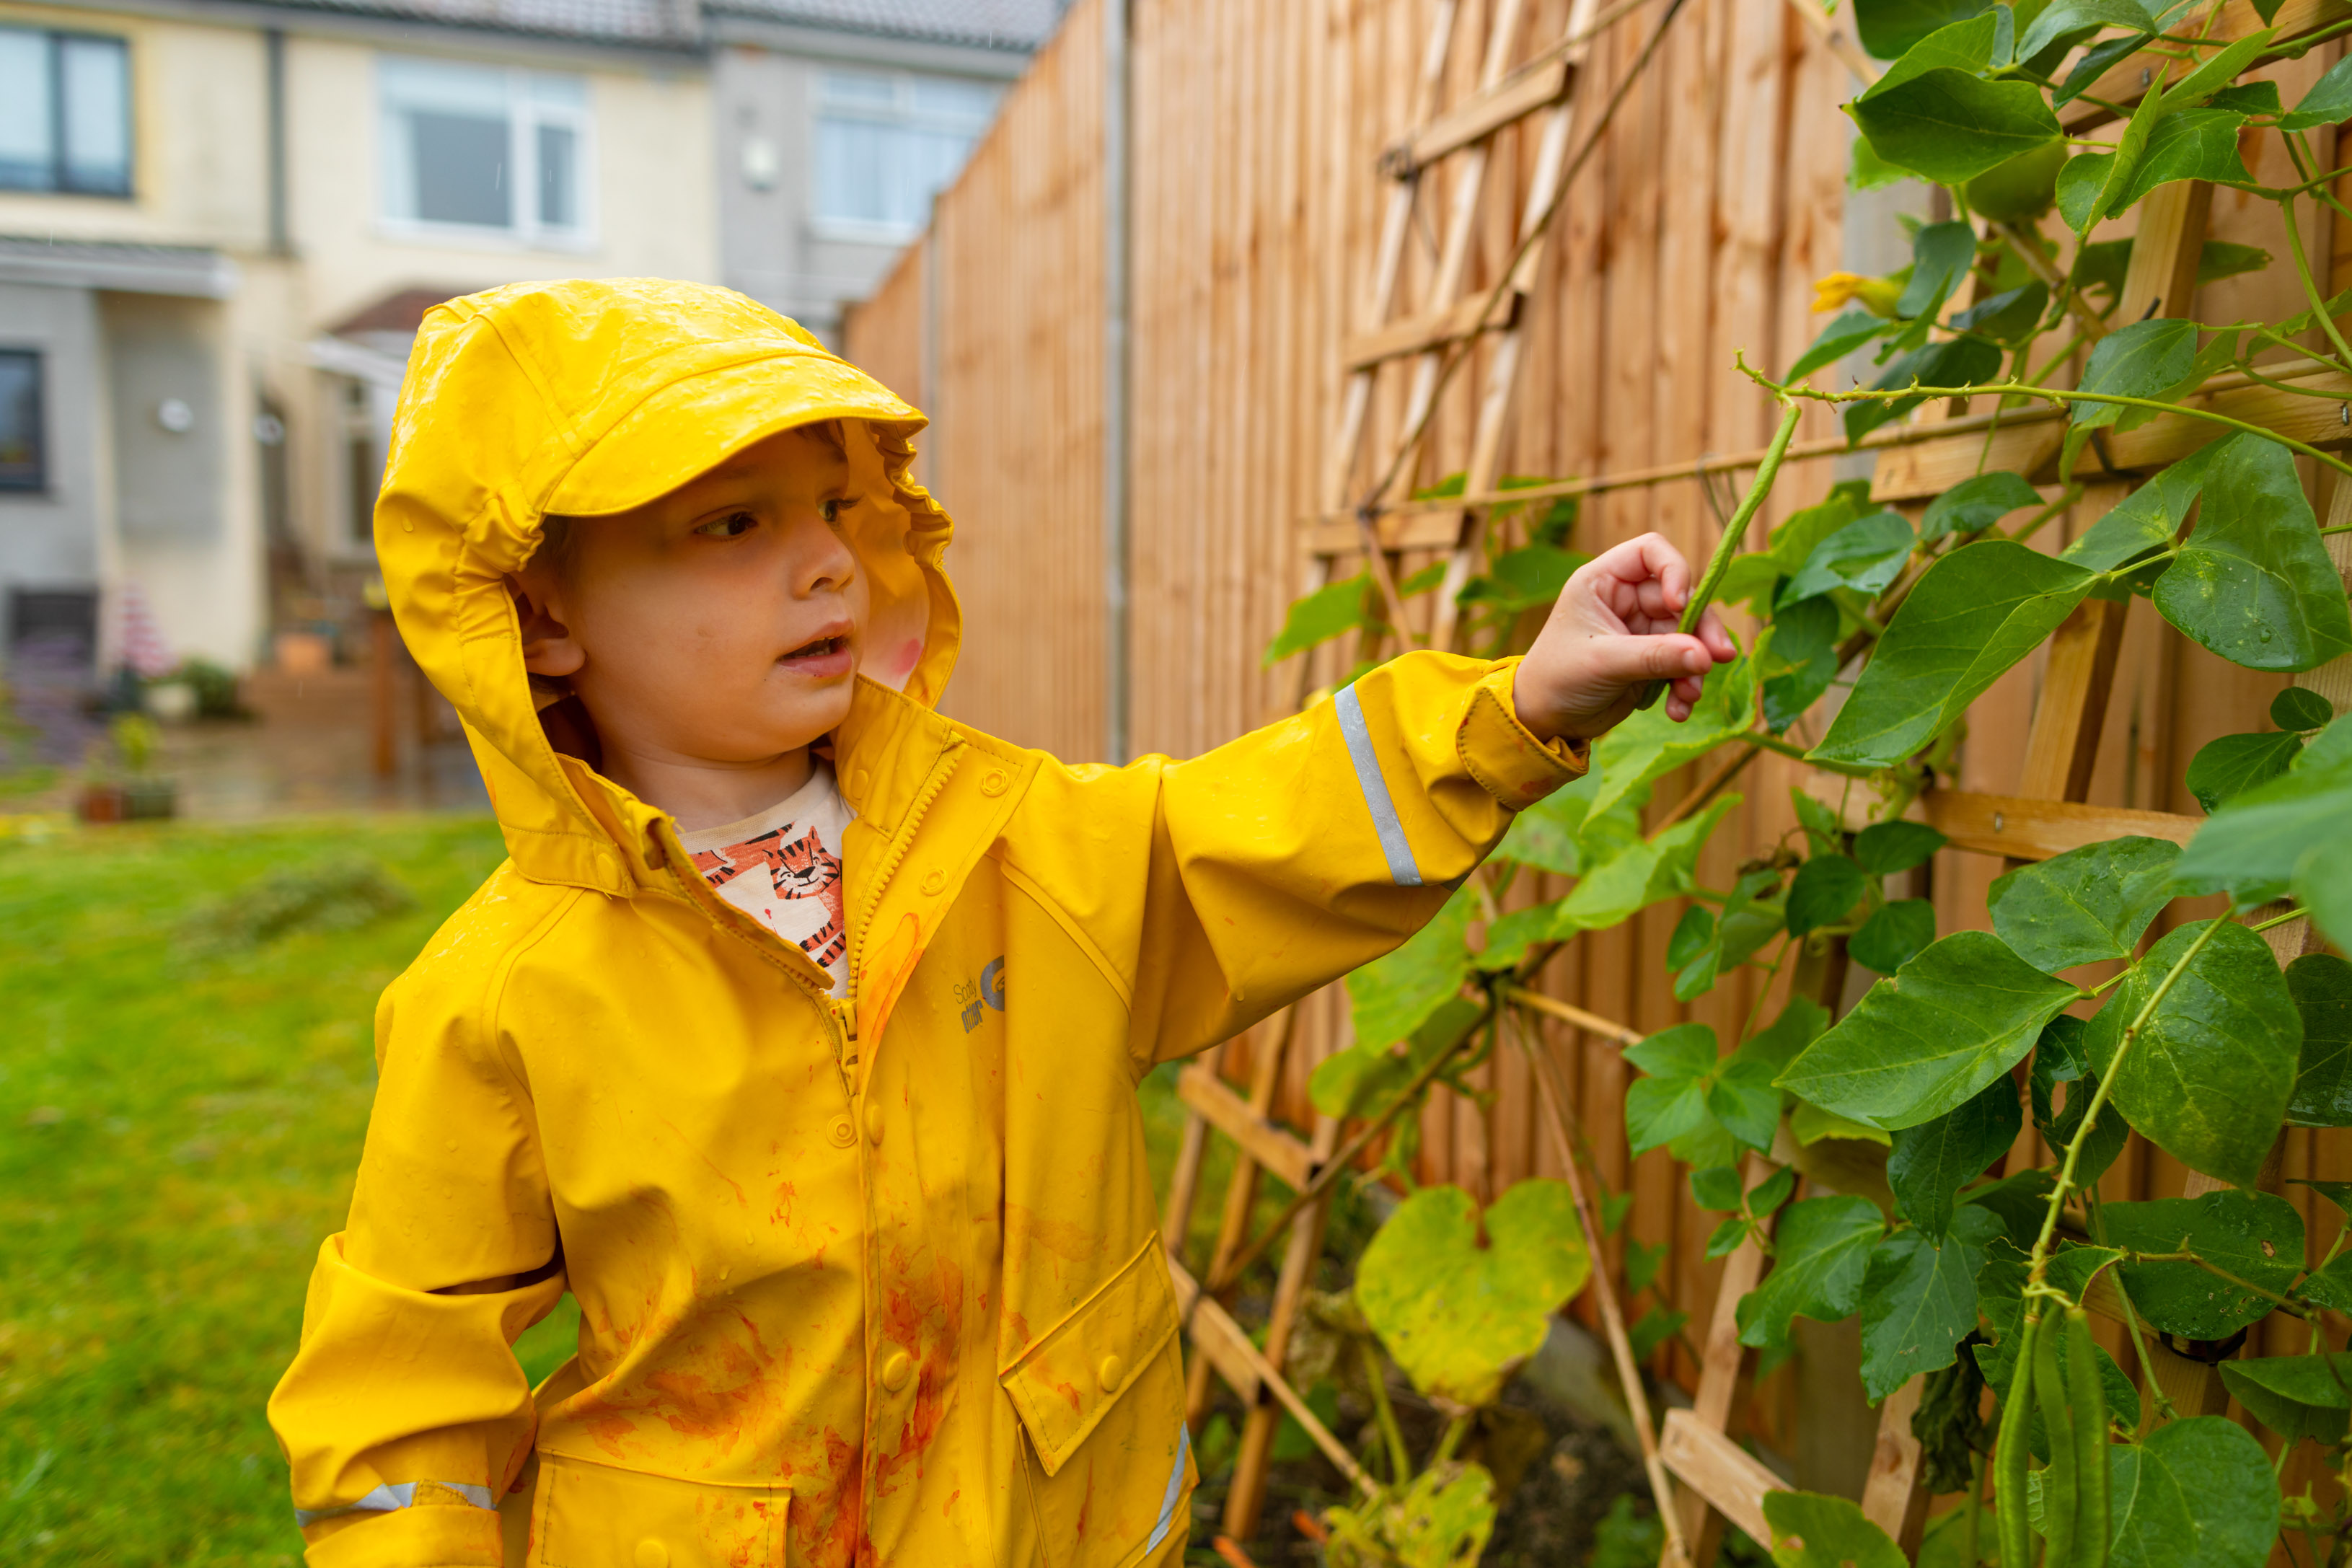 young boy in a yellow rain coat touching plants